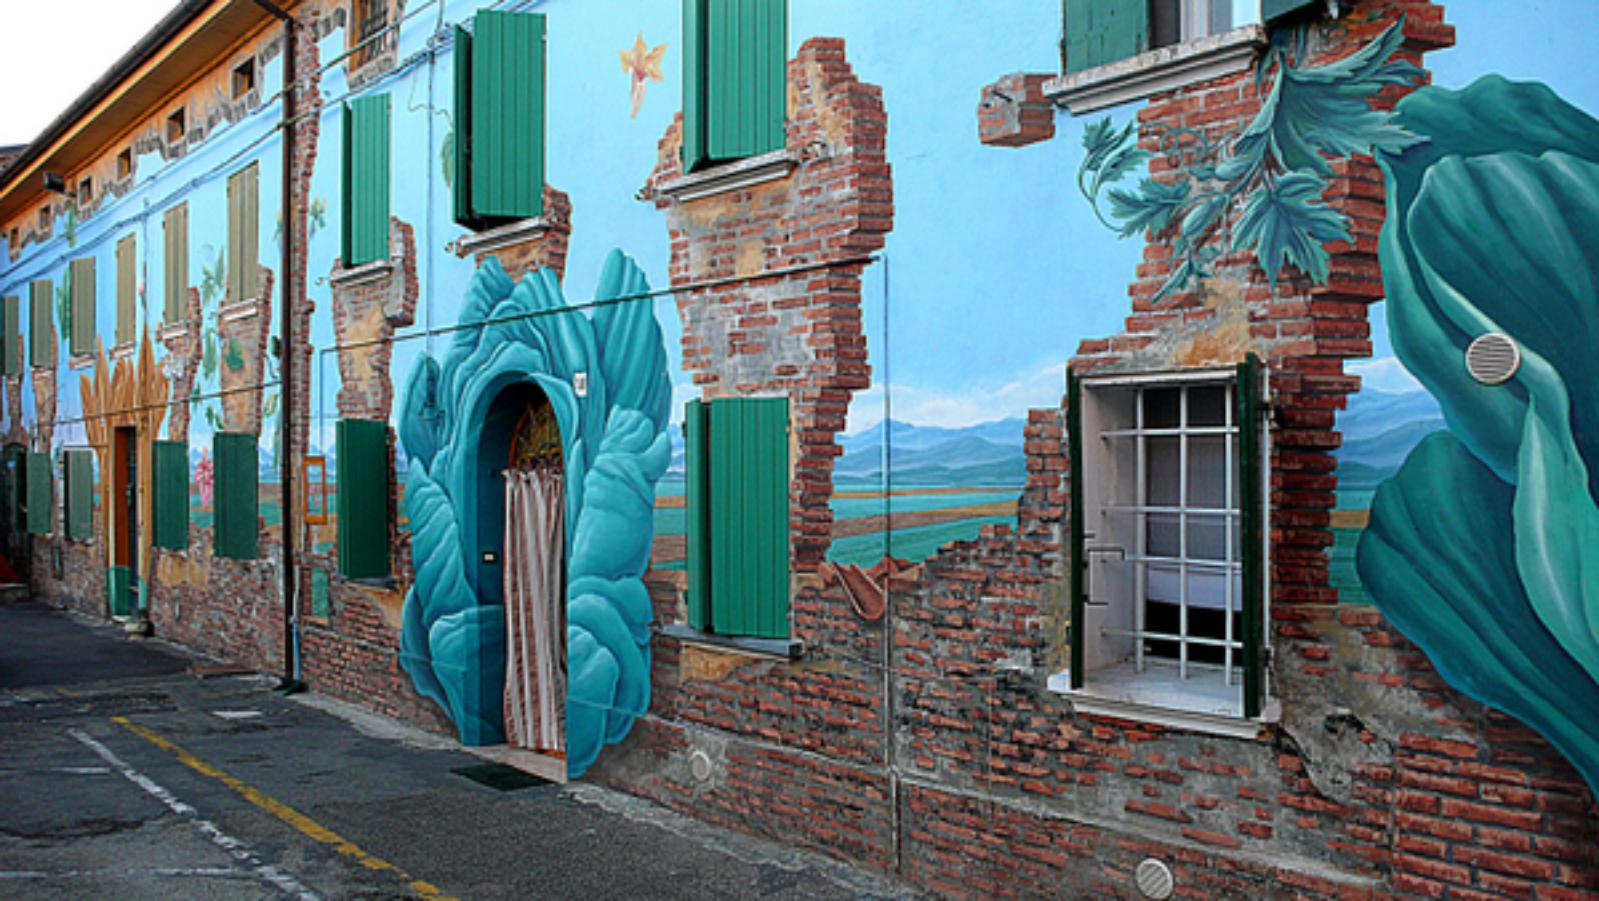 Murales Piazzetta San Giovanni in Persiceto